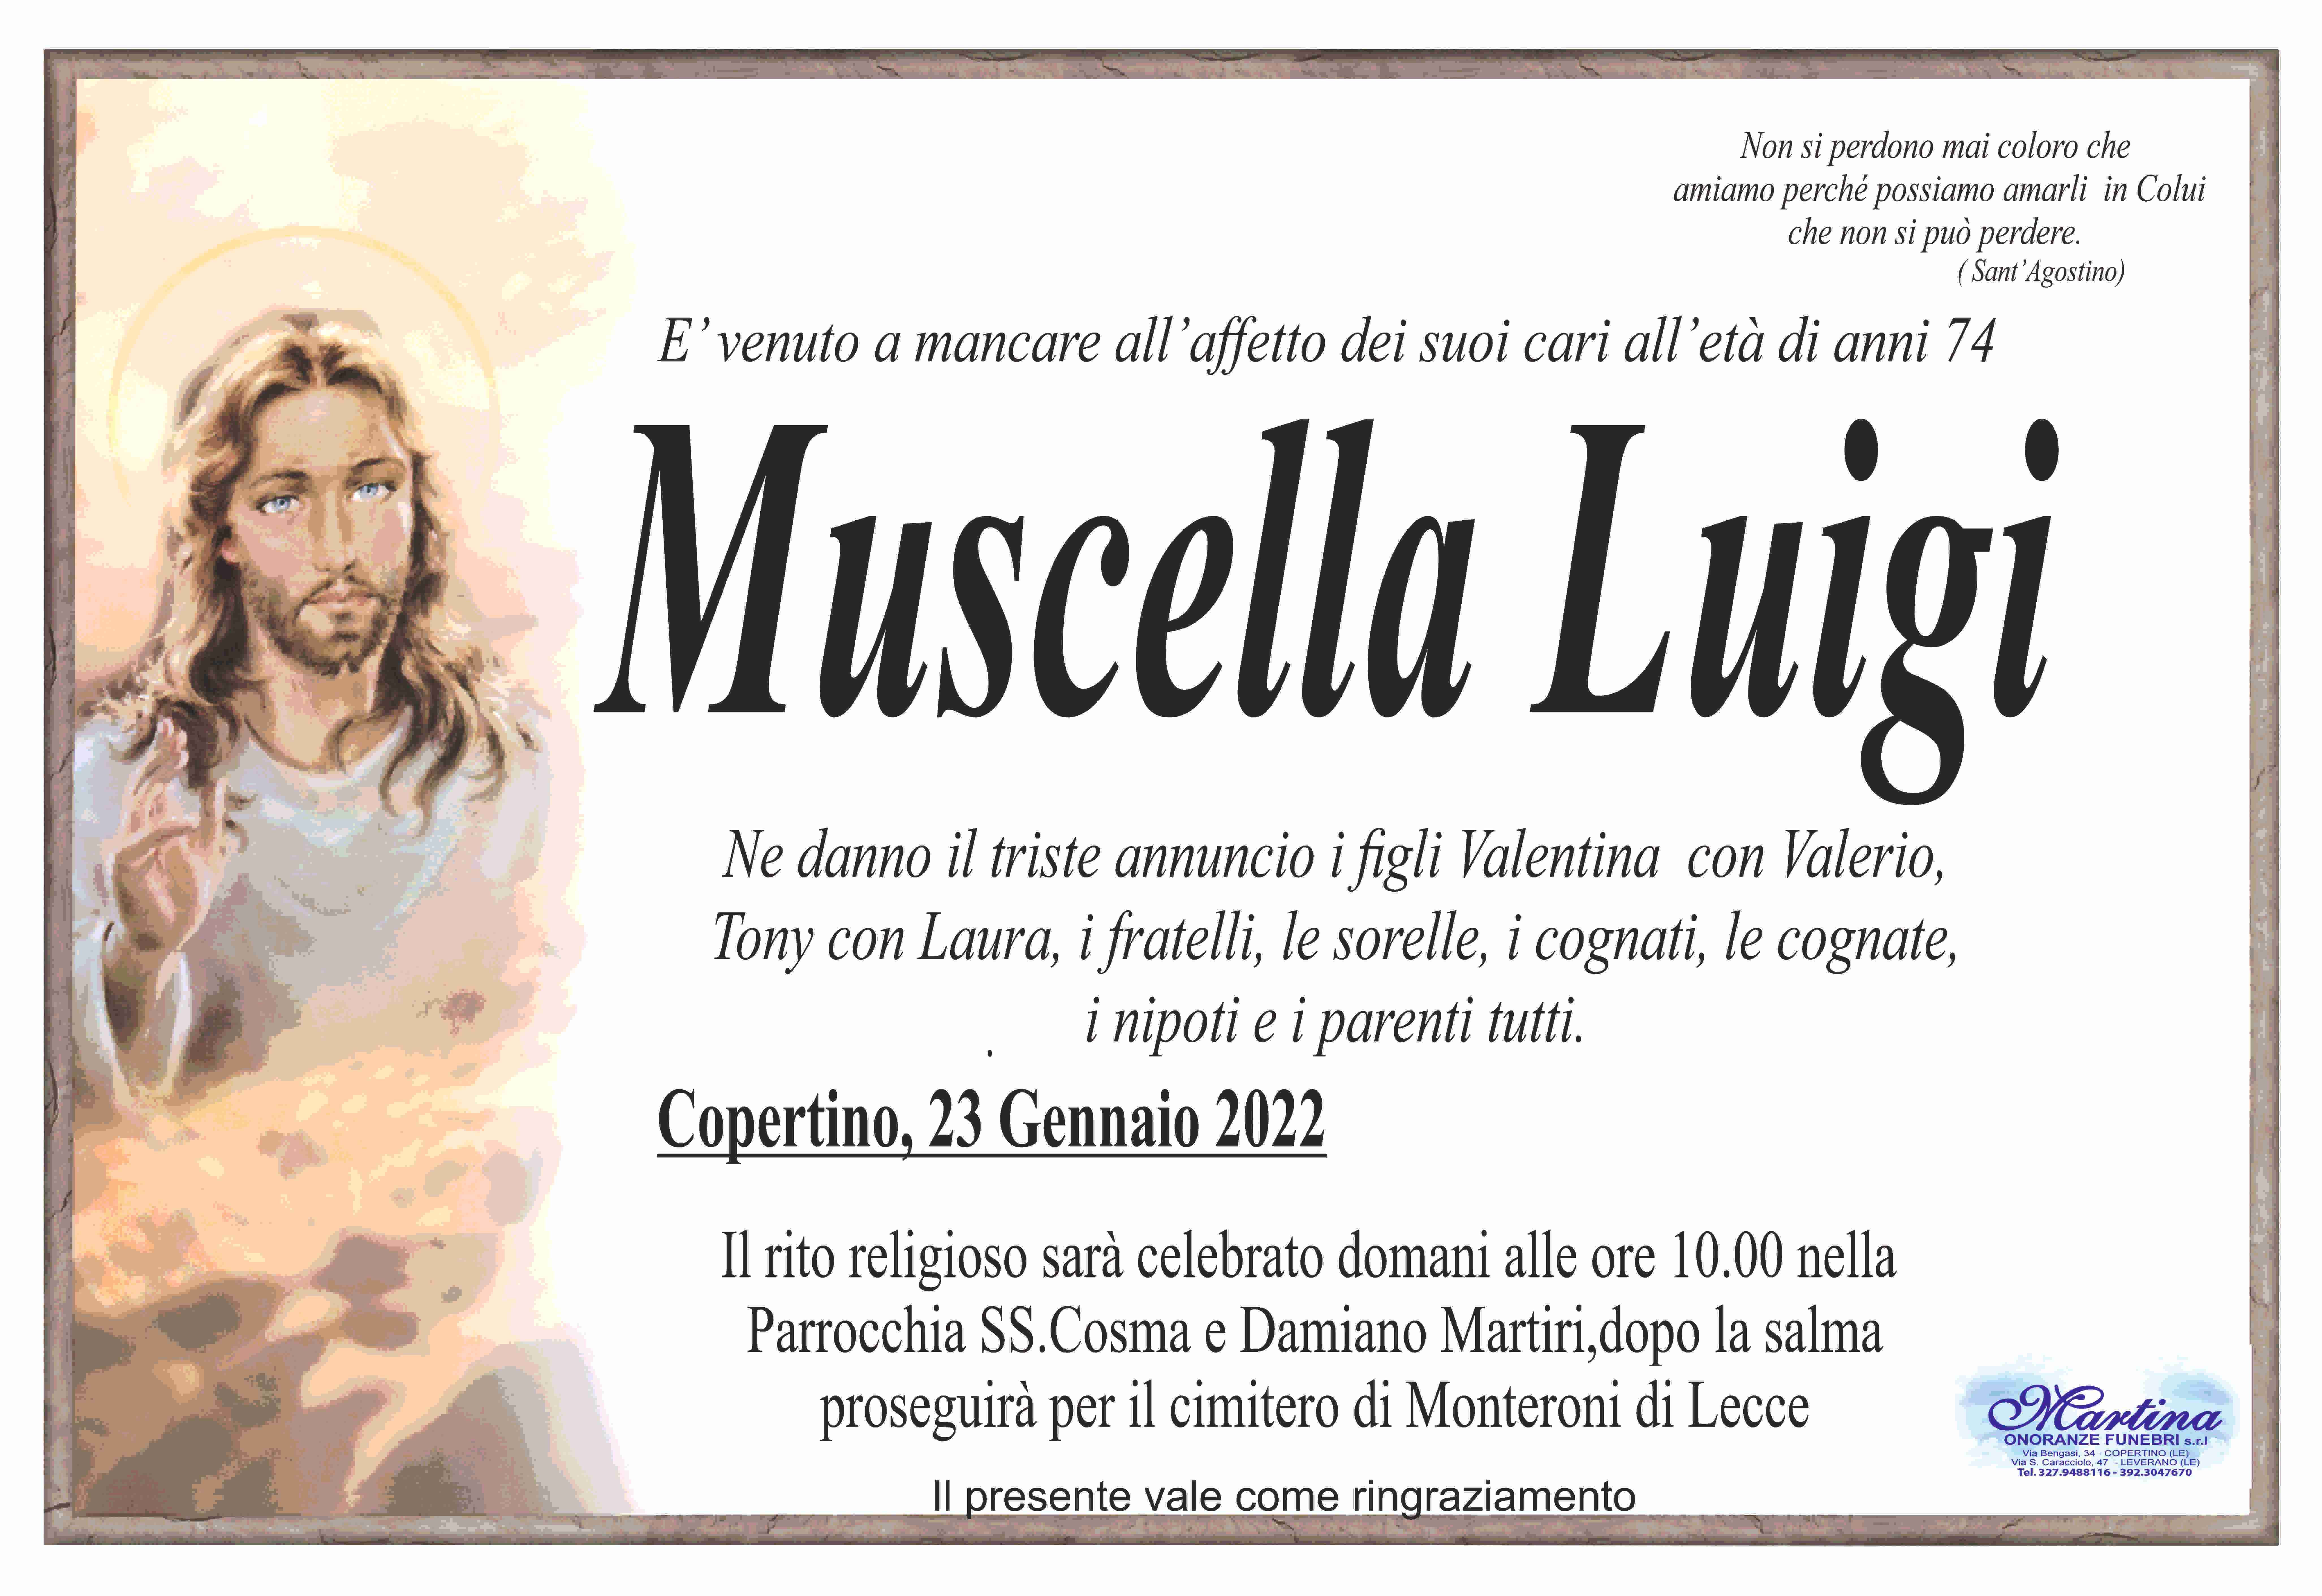 Luigi Muscella